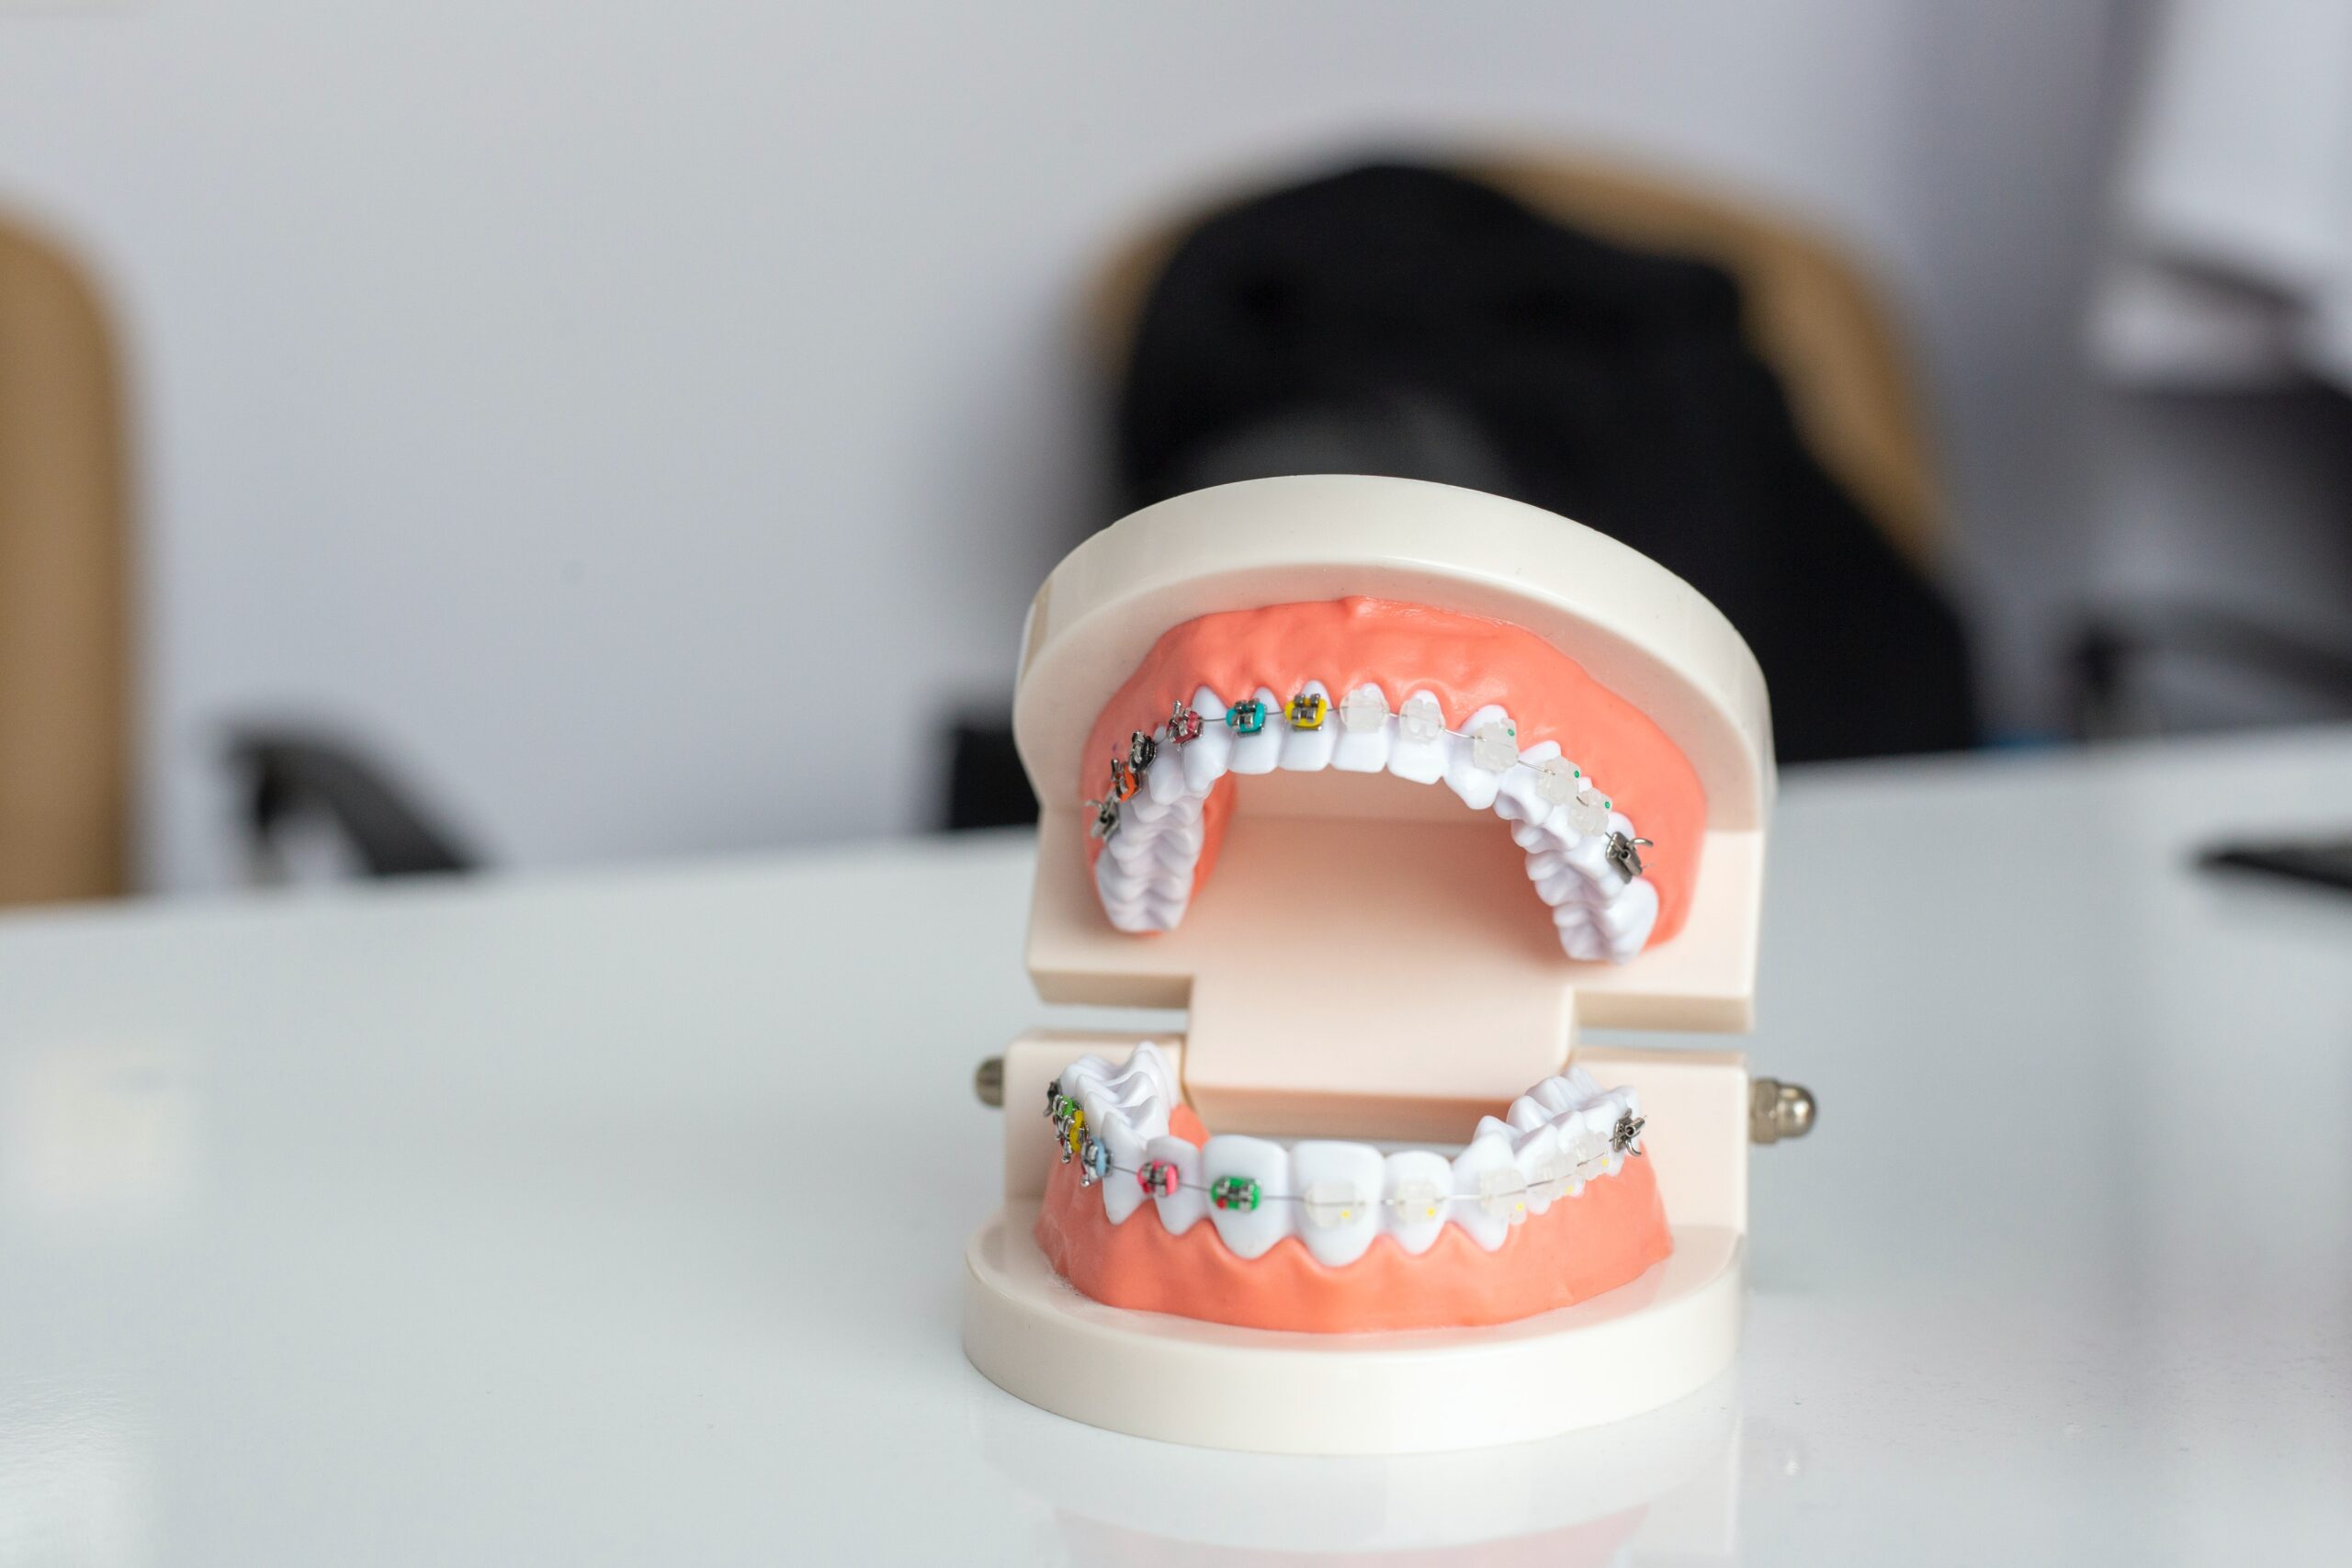 Jak współcześnie uzupełnia są braki zębów?